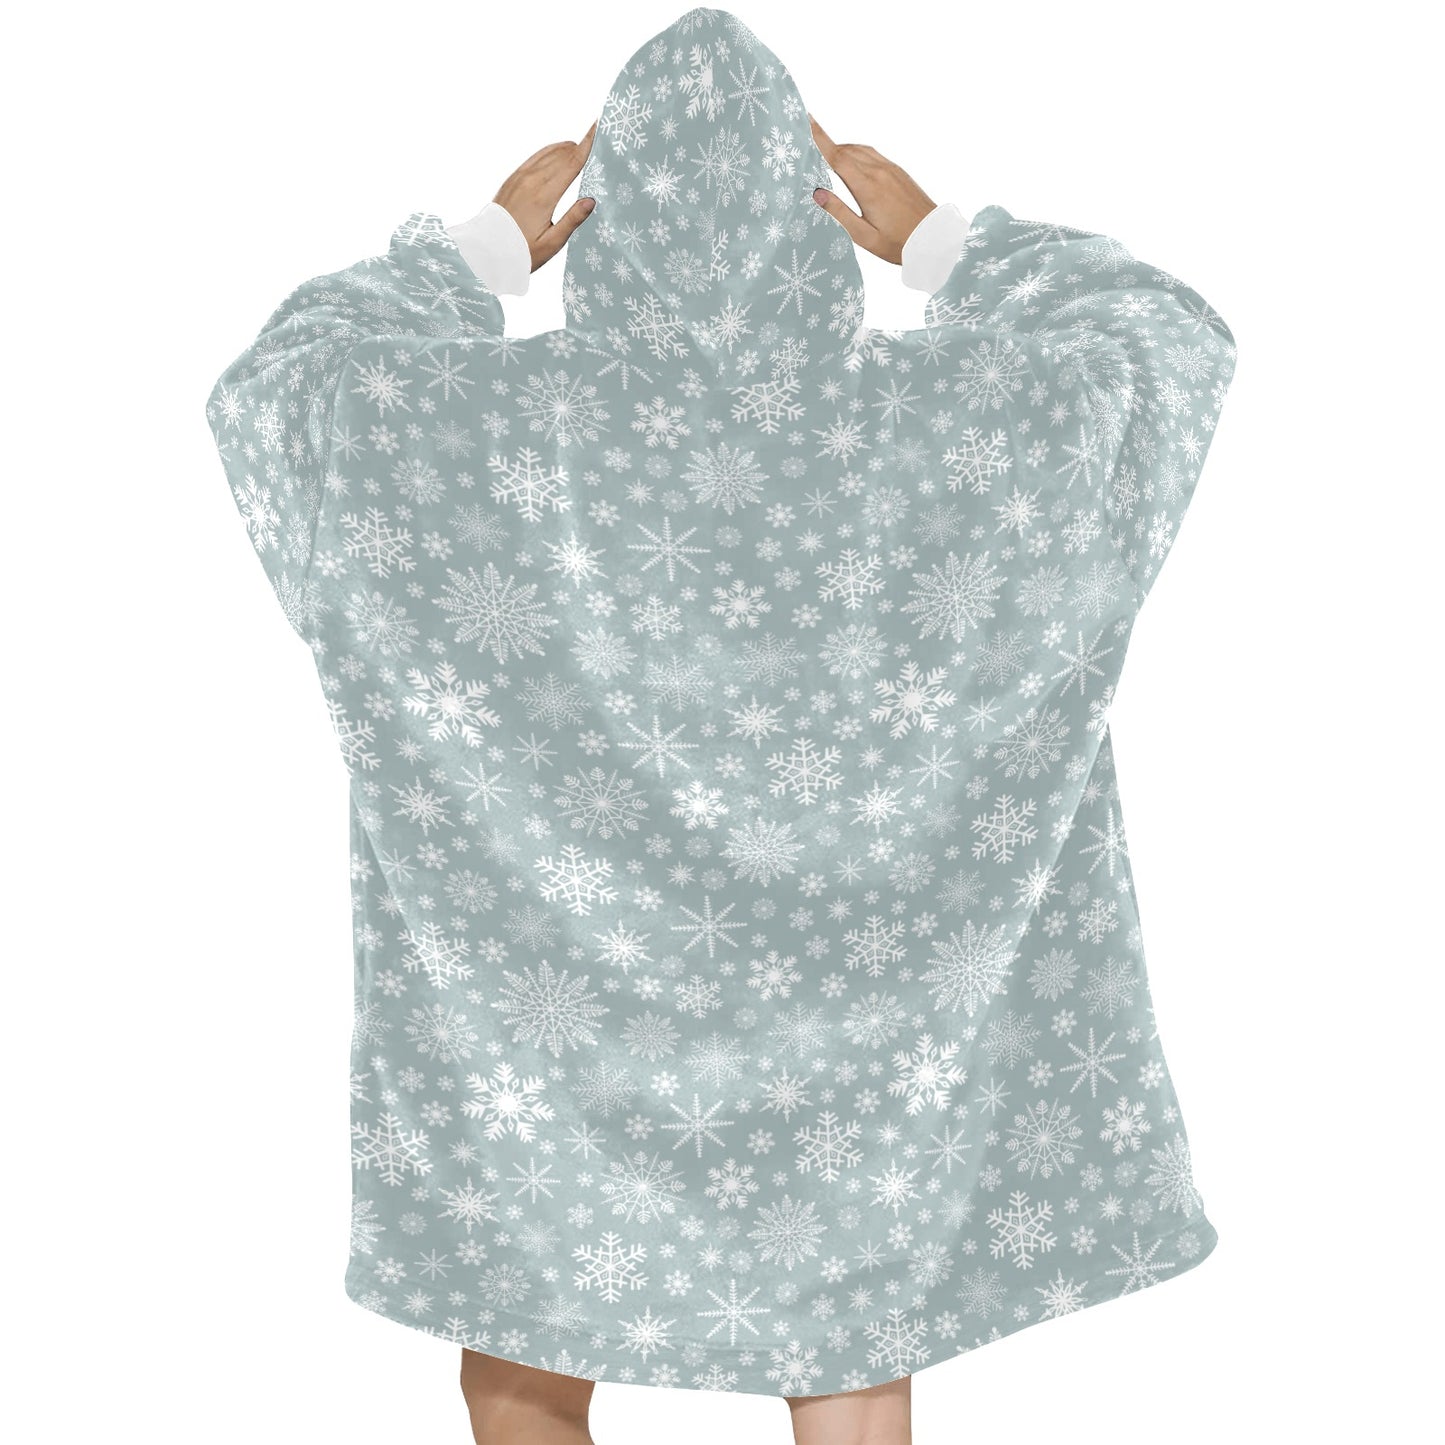 Snowflake Winter Hooded Blanket Oodie